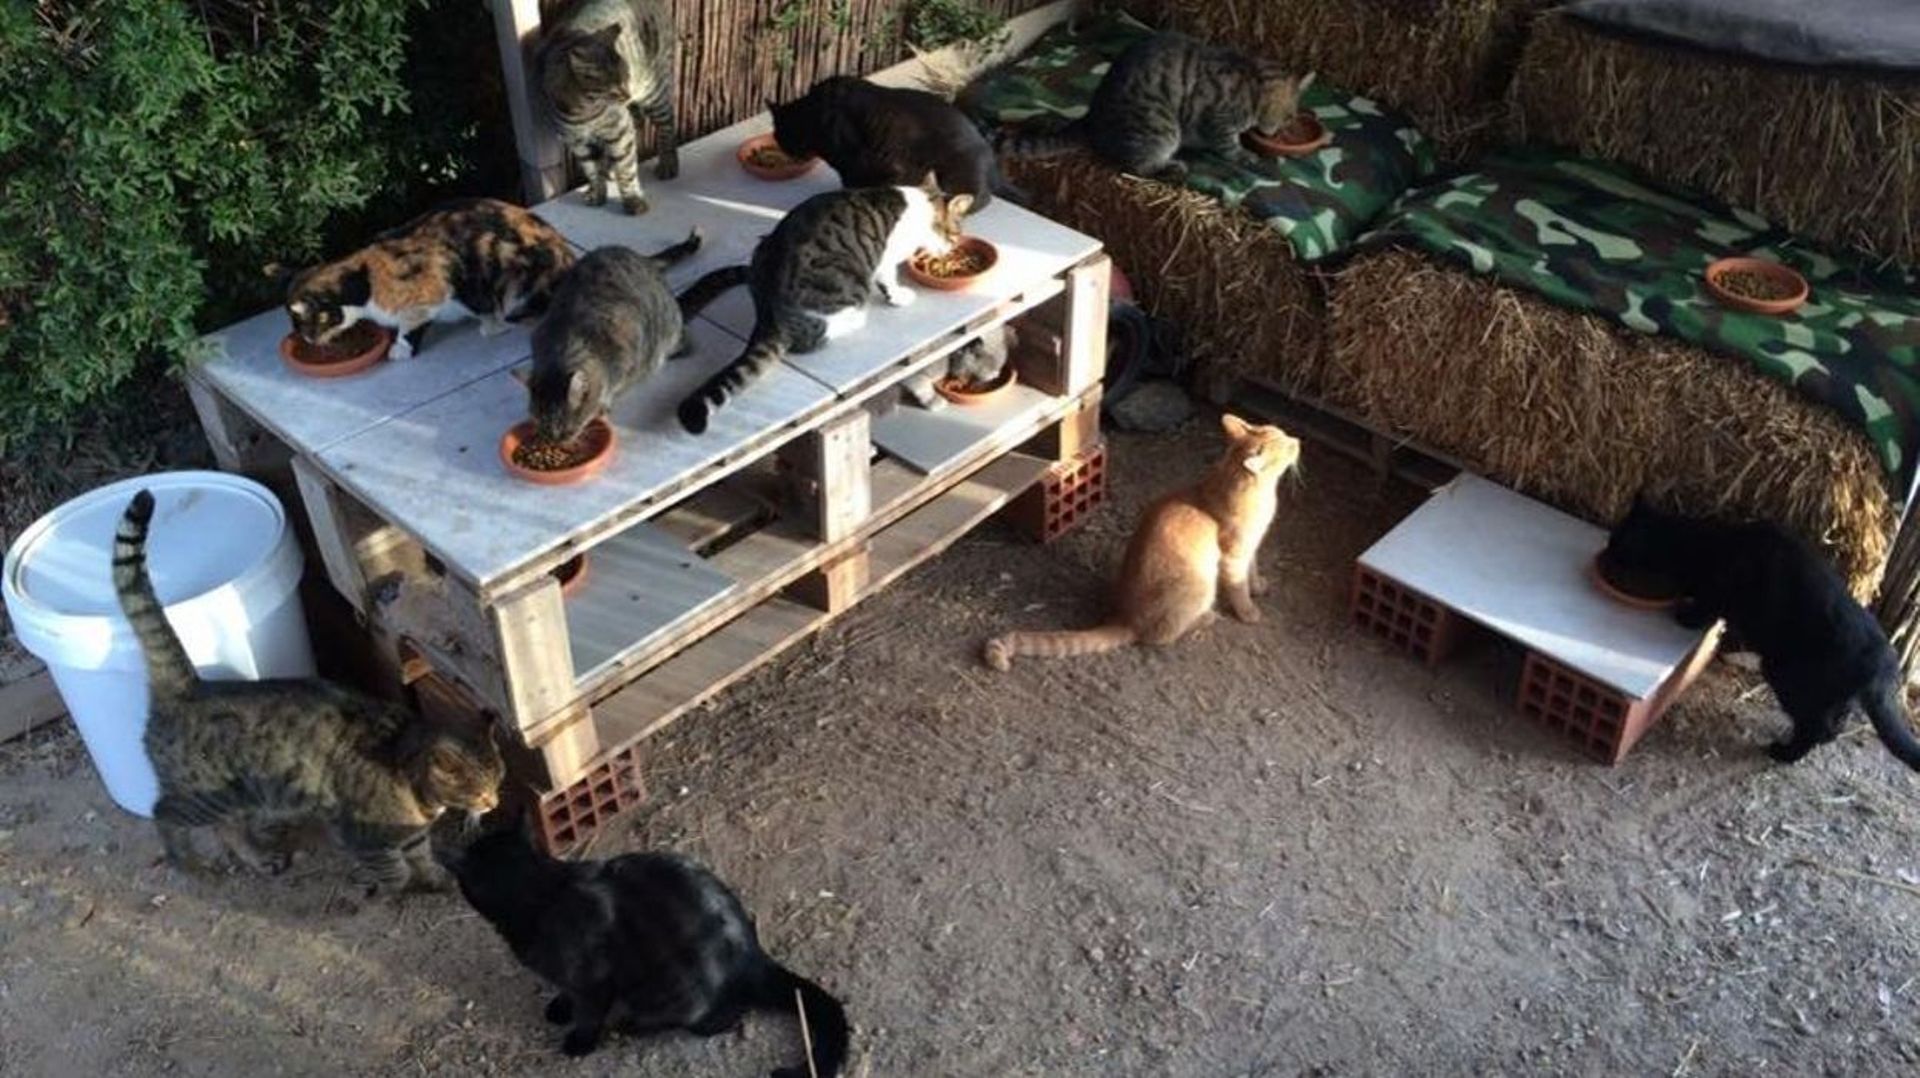 Voulez-vous être payé pour prendre soin de 55 chats sur l'île de Syros? 